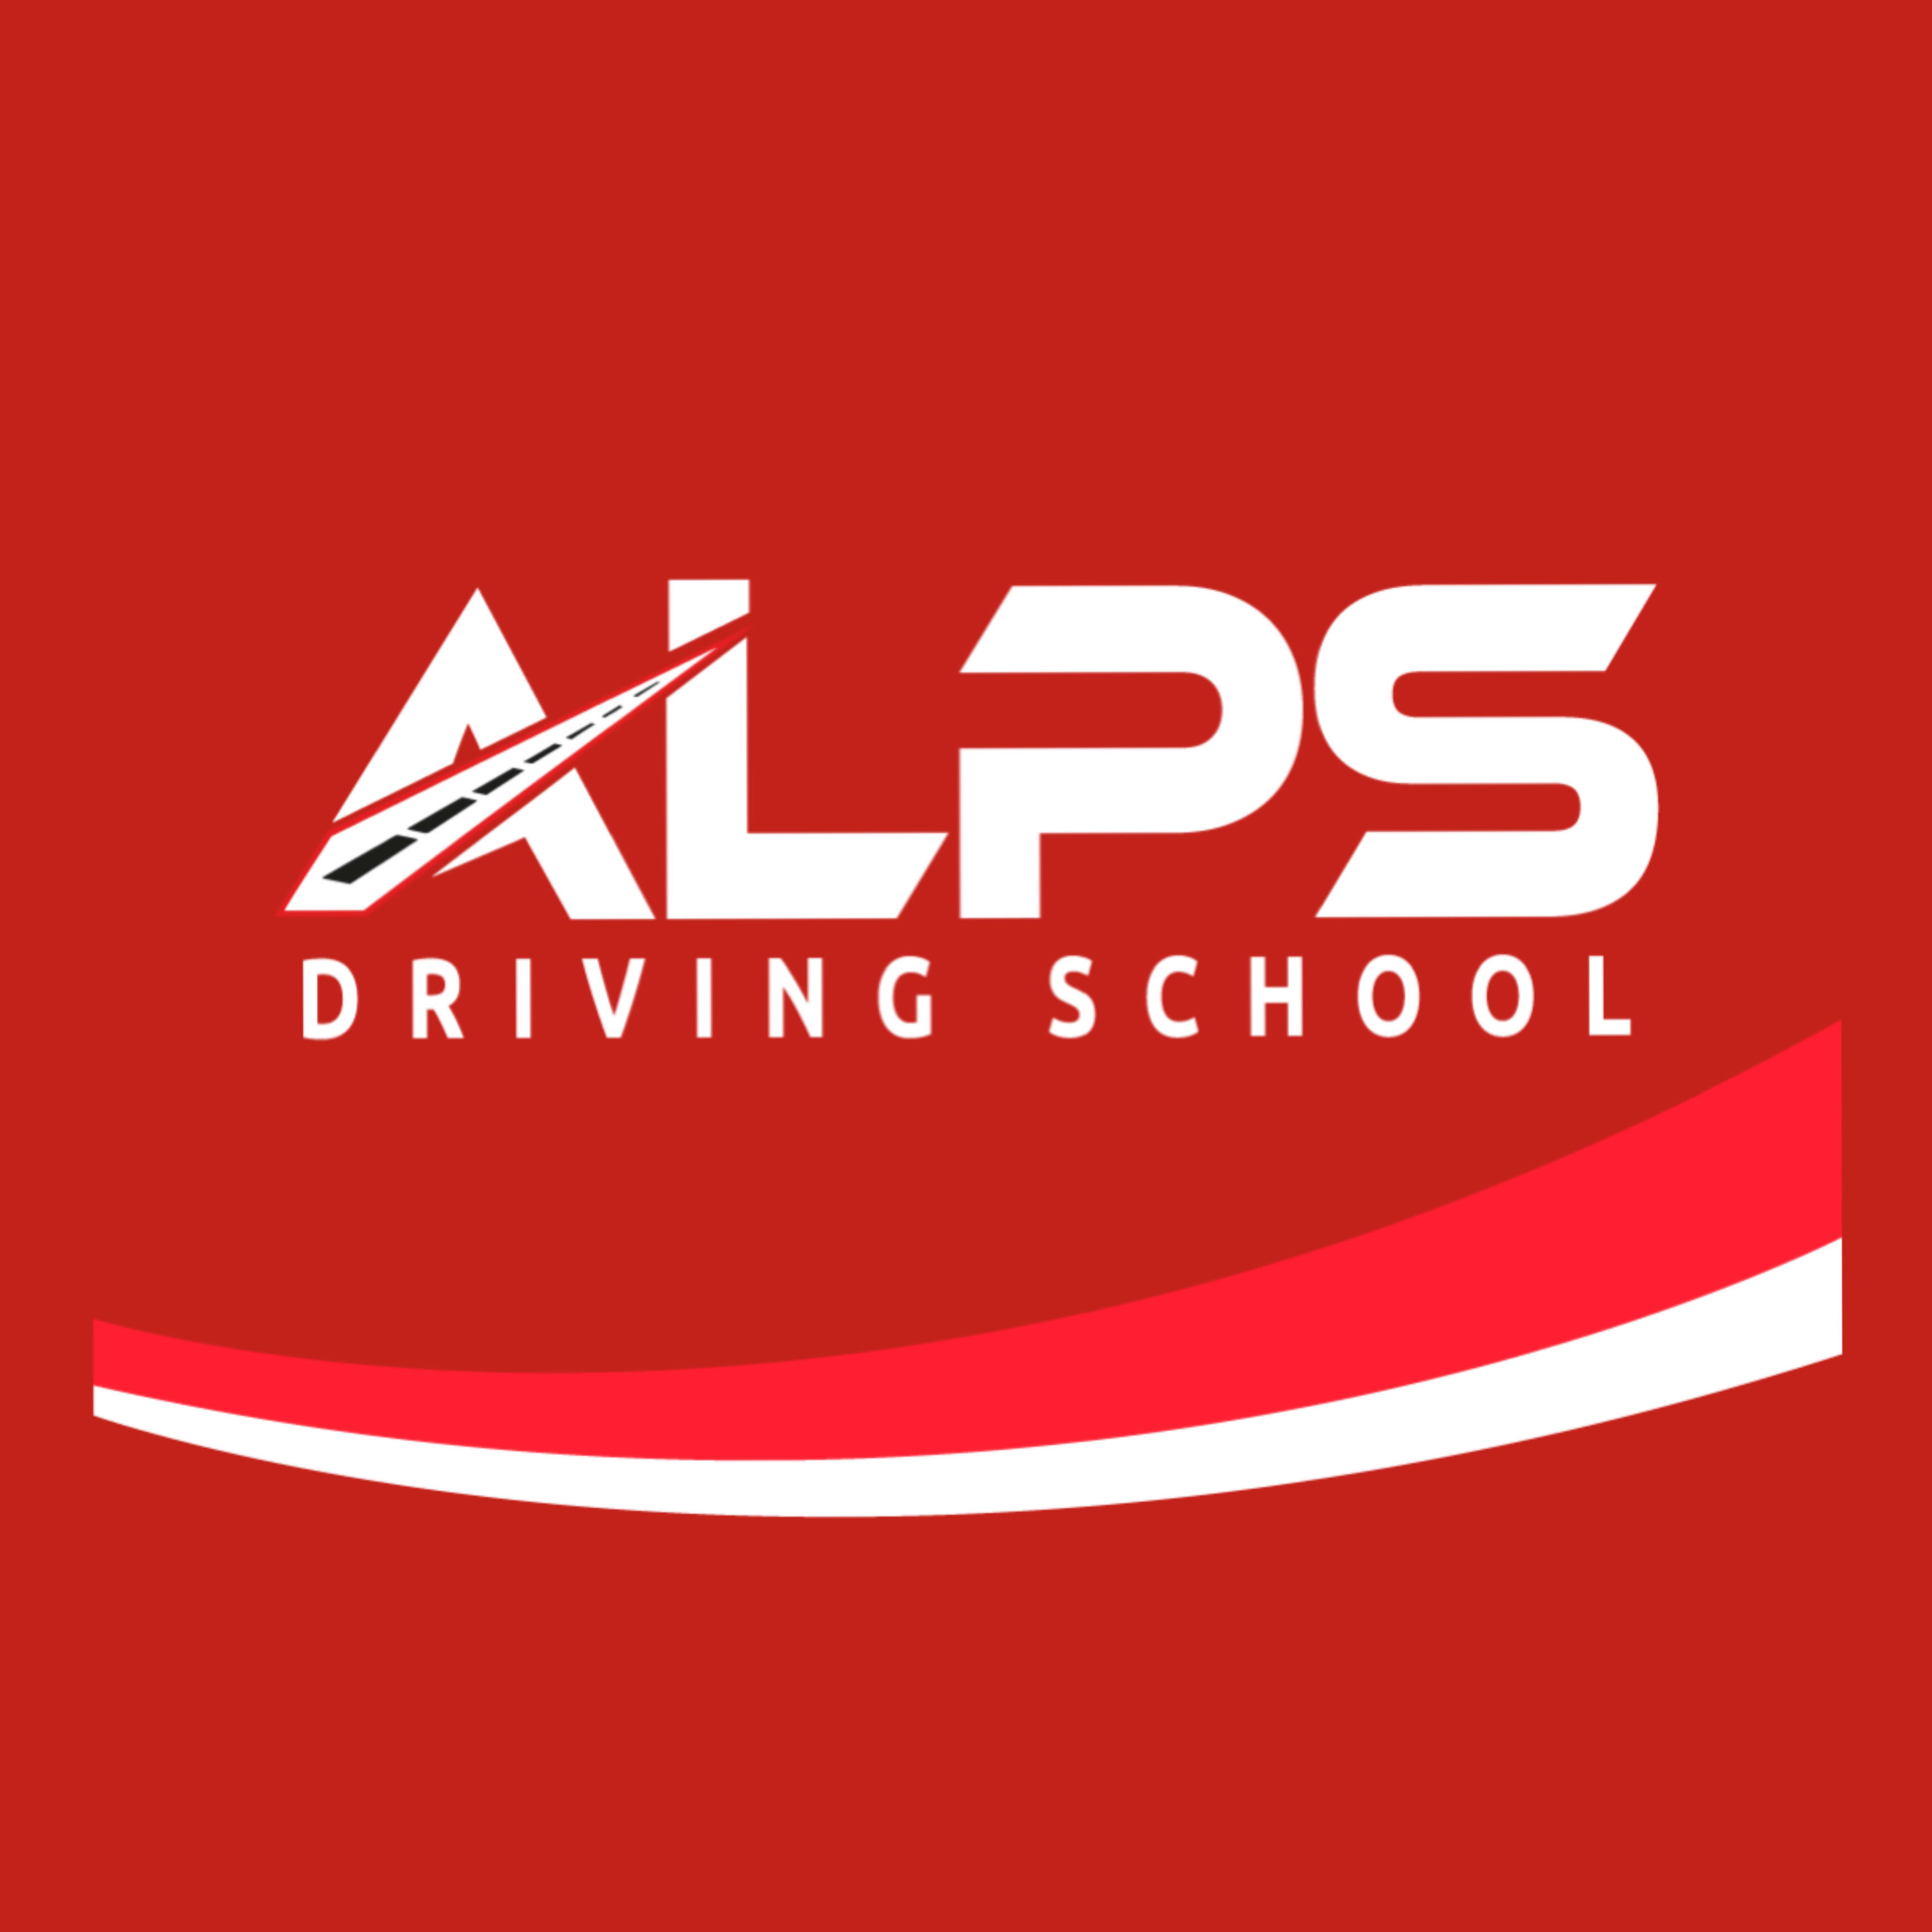 ALPS DRIVING SCHOOL